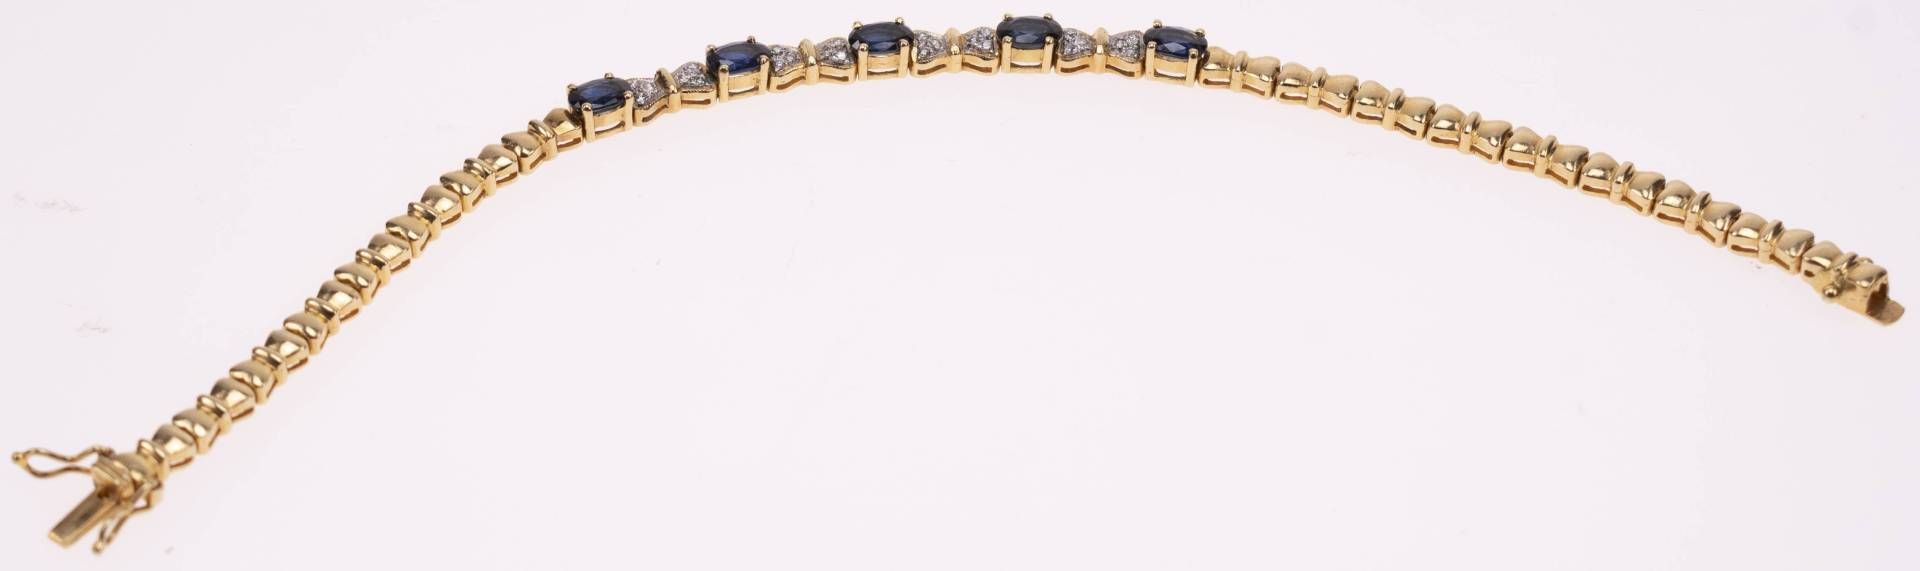 Saphir Diamanten Armband, 750 Gelbgold/18K, 24 Diamanten zus. ca. 0,18ct, 5 Saphire ca. 3,4ct, Länge - Bild 3 aus 4